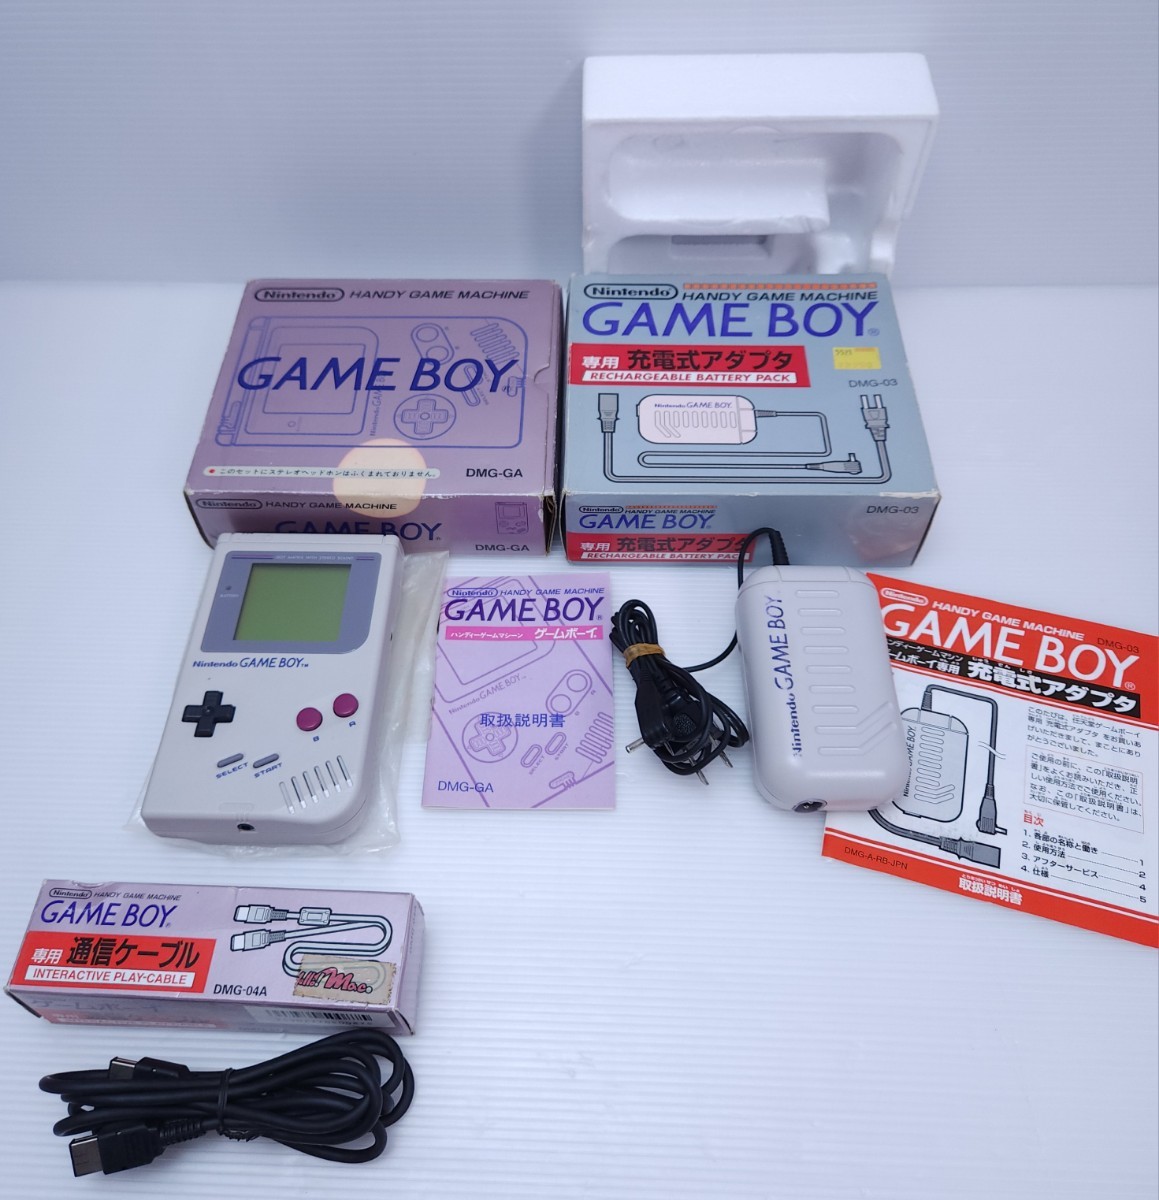 【新品、本物、当店在庫だから安心】 美品/動作品 初代ゲームボーイ Nintendo GAMEBOY 箱付き 通電確認済み インタラクティブプレイケーブルと電源アダプター 本体